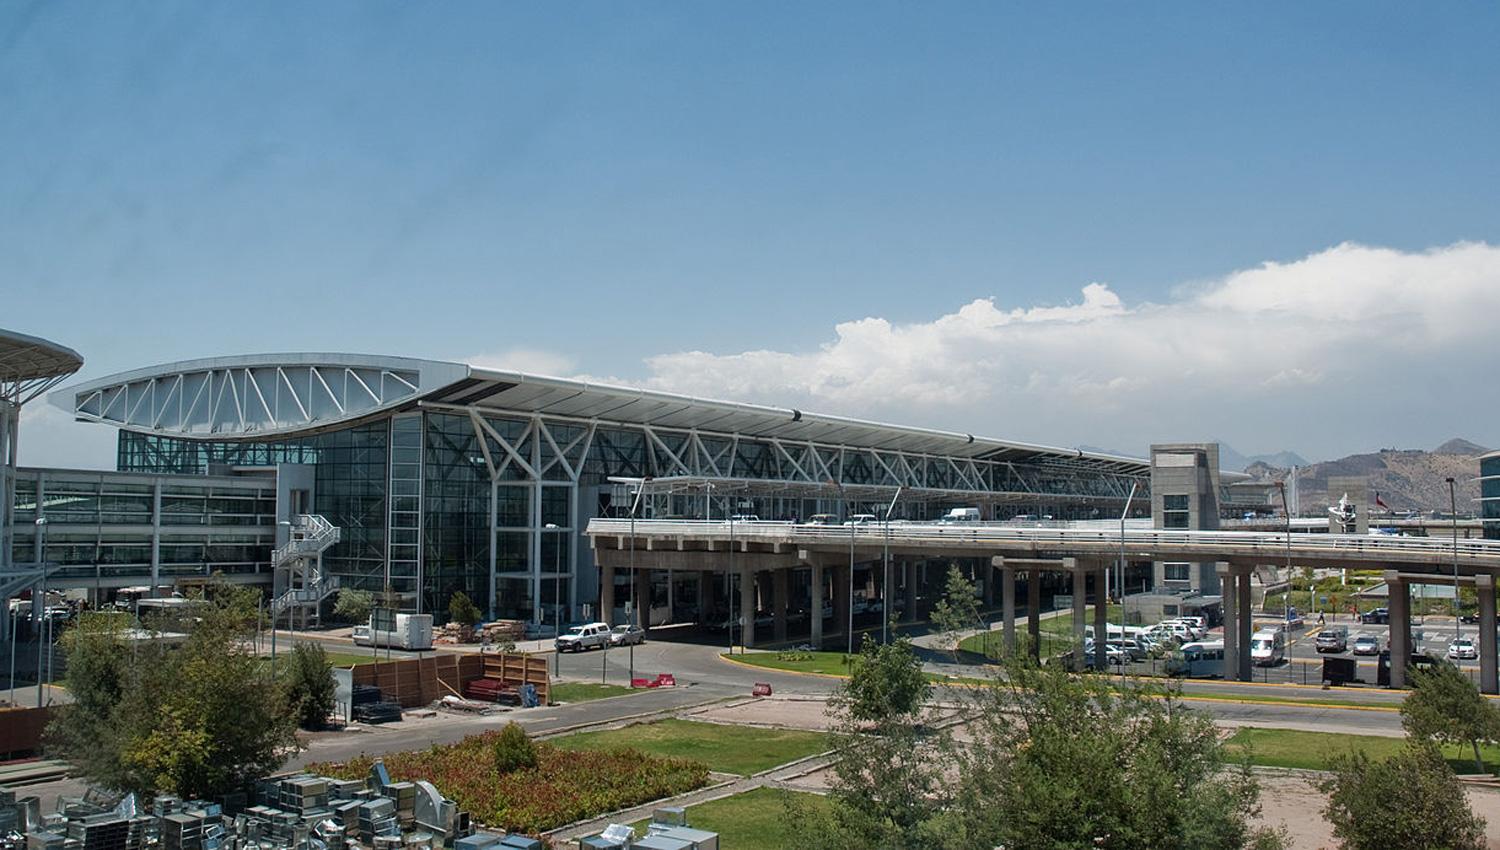 MODERNO. El aeropuerto conocido como Santiago-Pudahuel cuenta con dos pistas de aterrizajes y 18 puertas, además de estacionamiento para 3.300 autos y un hotel con 112 habitaciones. FOTO TOMADA DE AEROPUERTOS.NET